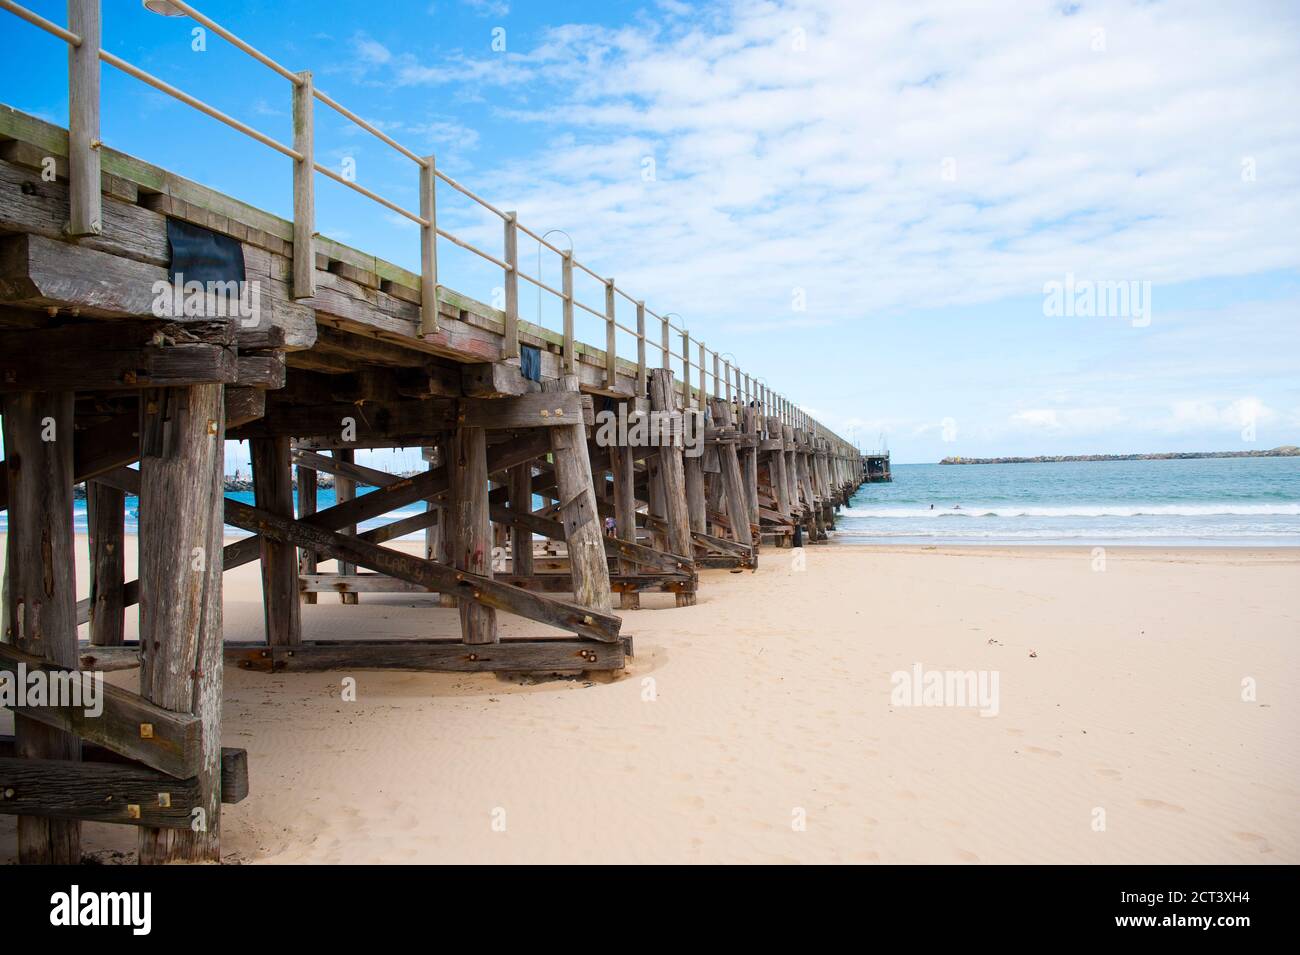 Anlegesteg am Coffs Harbour an der Ostküste Australiens, Hintergrund mit Kopierfläche Stockfoto